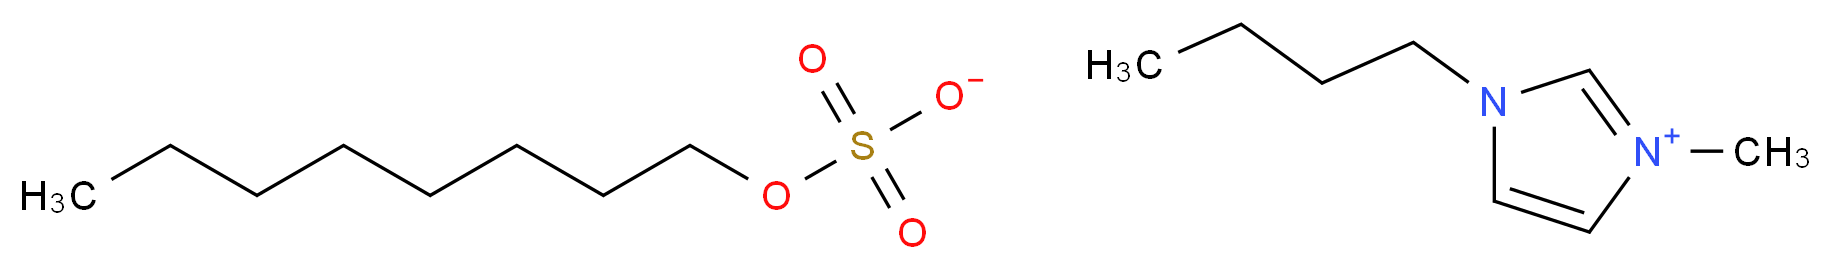 1-Butyl-3-methylimidazolium octyl sulfate_Molecular_structure_CAS_445473-58-5)